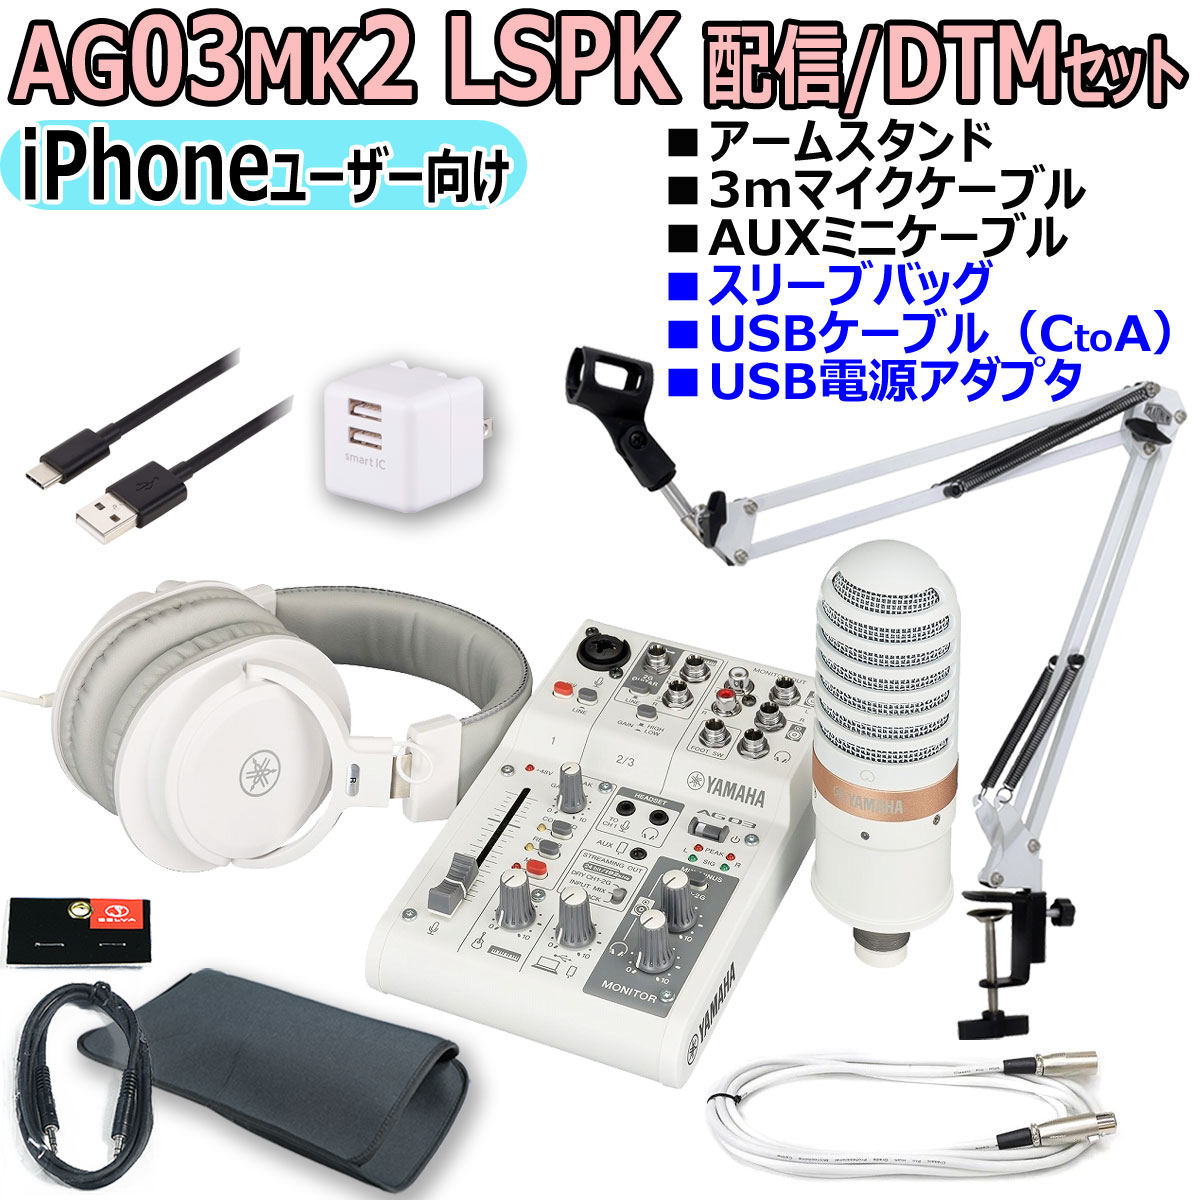 お得に買える通販 YAMAHA AG03MK2 WHITE AT2020 iPhoneユーザー向け 配信/DTMセット 楽器、手芸、コレクション 